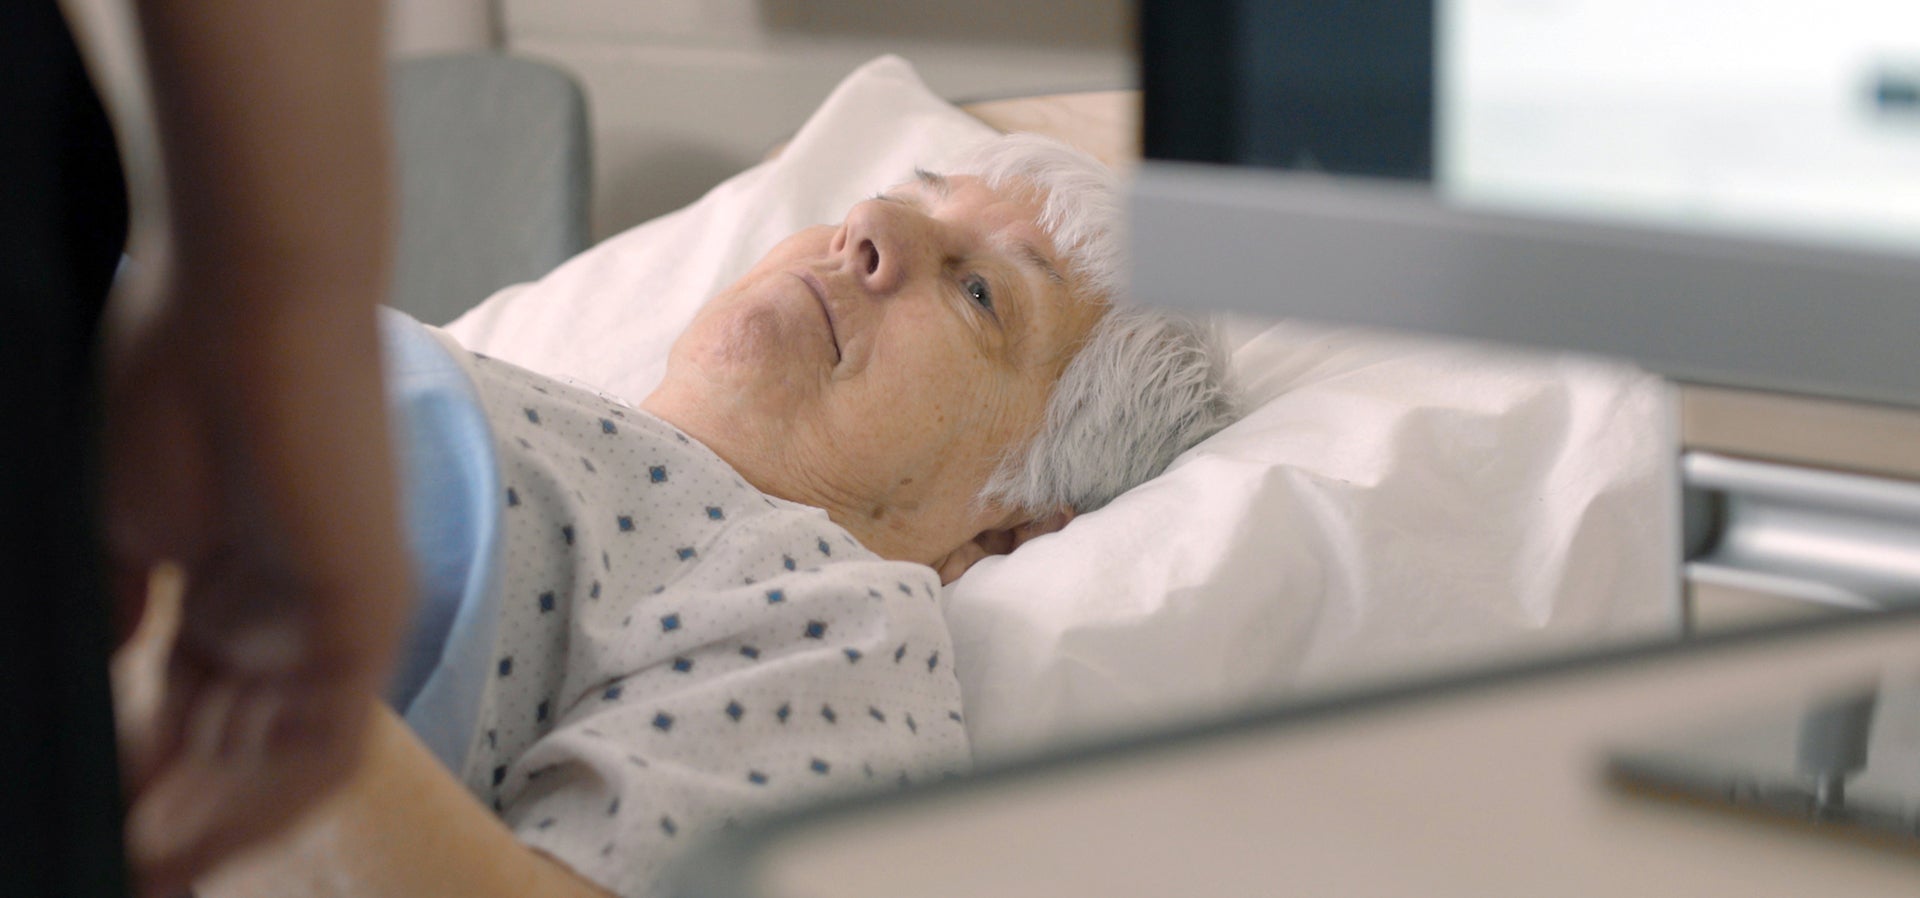 Elderly women lies in a hospital bed